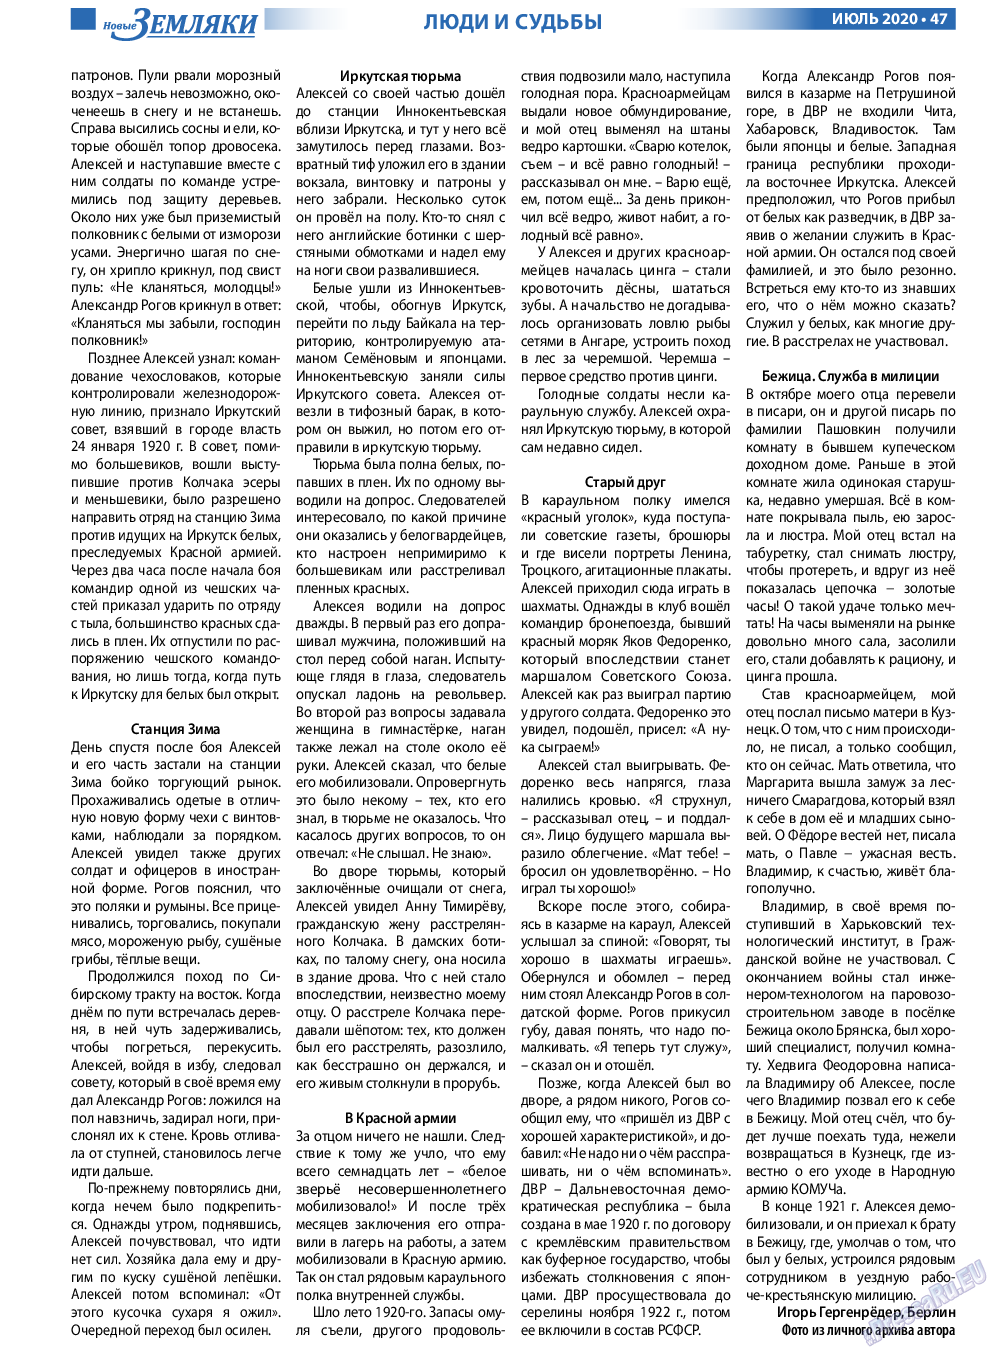 Новые Земляки, газета. 2020 №7 стр.47